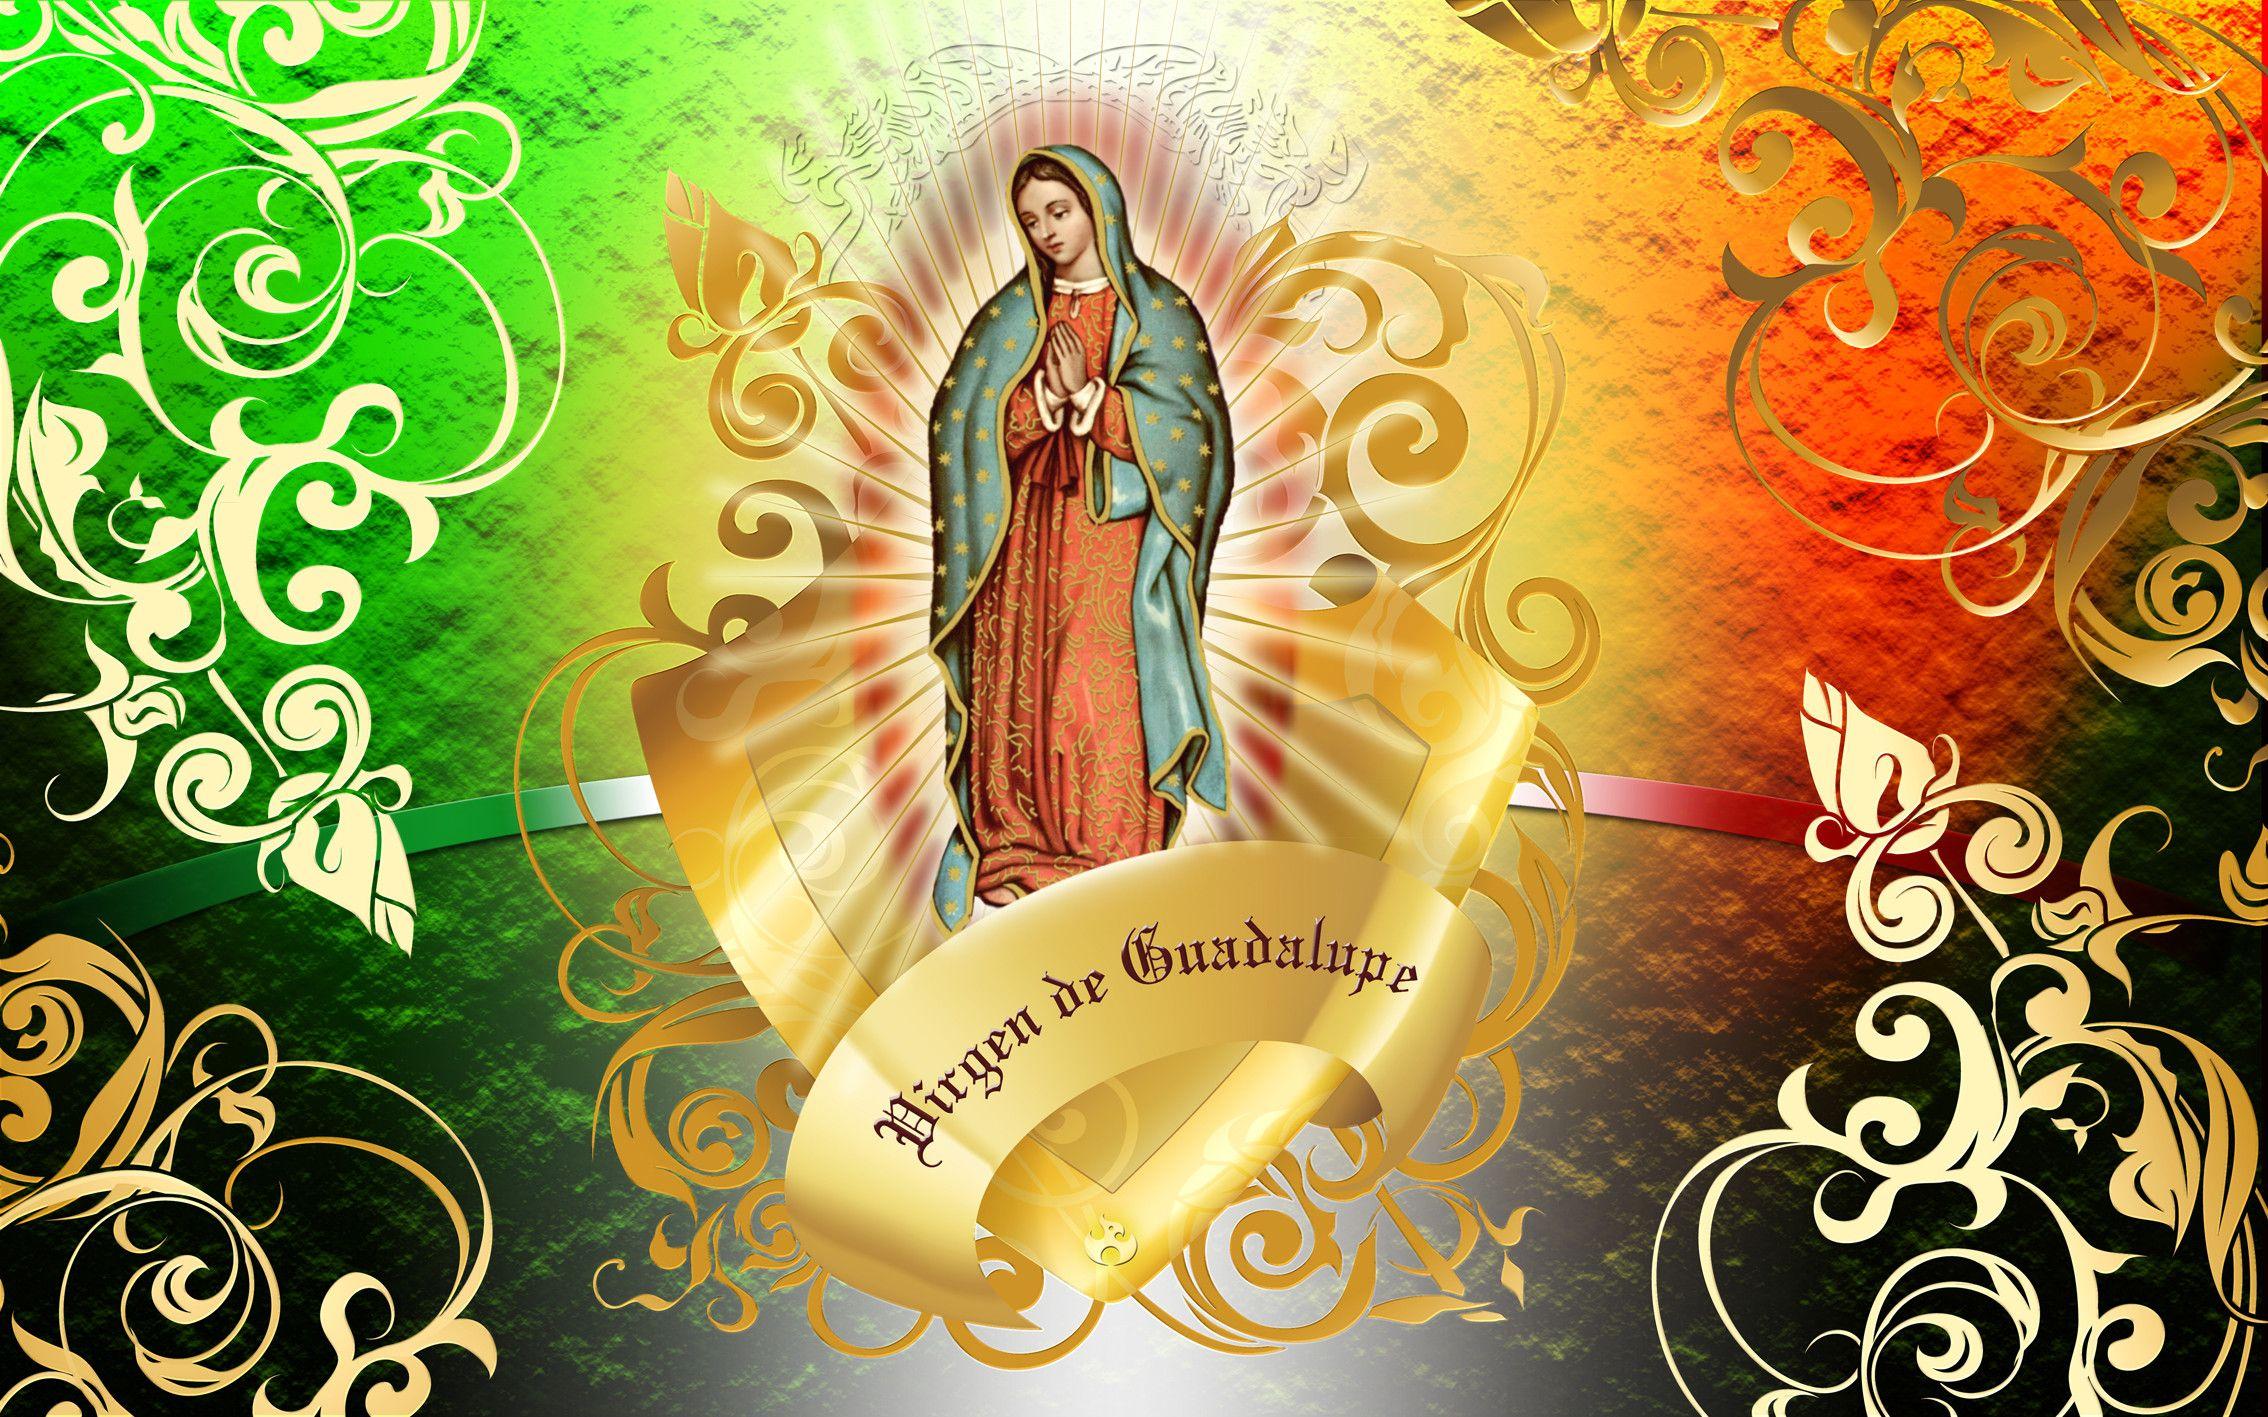 Virgen De Guadalupe Wallpapers  Top Free Virgen De Guadalupe Backgrounds   WallpaperAccess